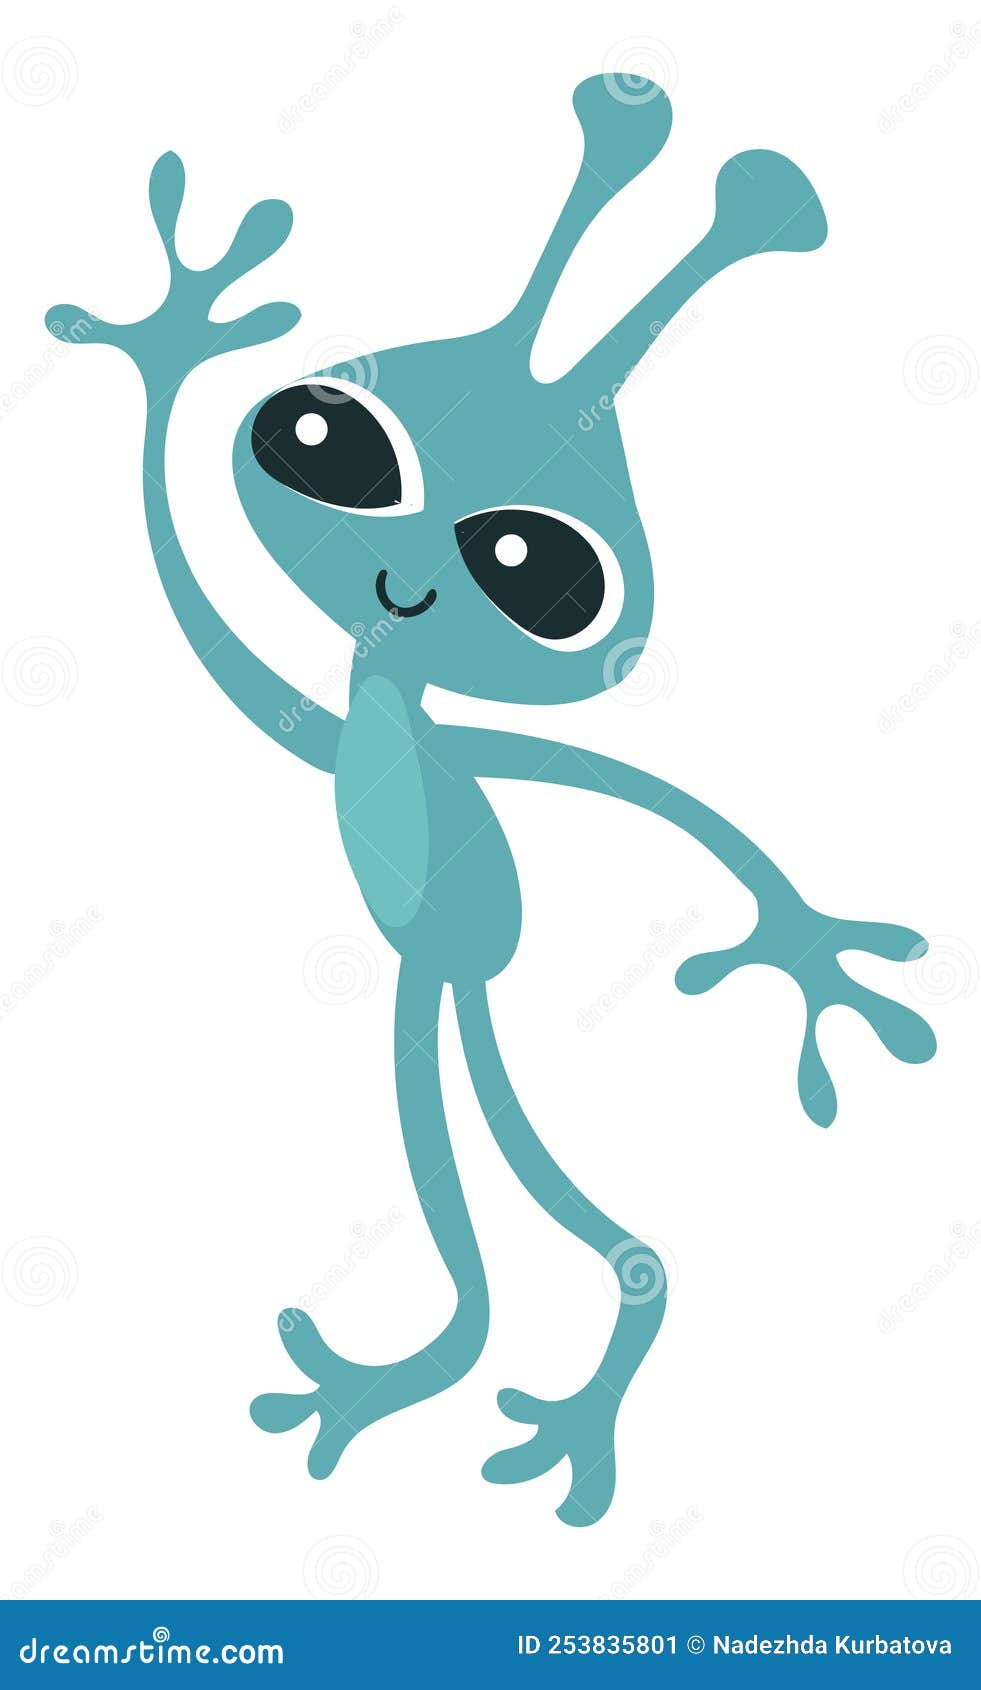 Um desenho de um alienígena azul com uma luz azul sobre ele